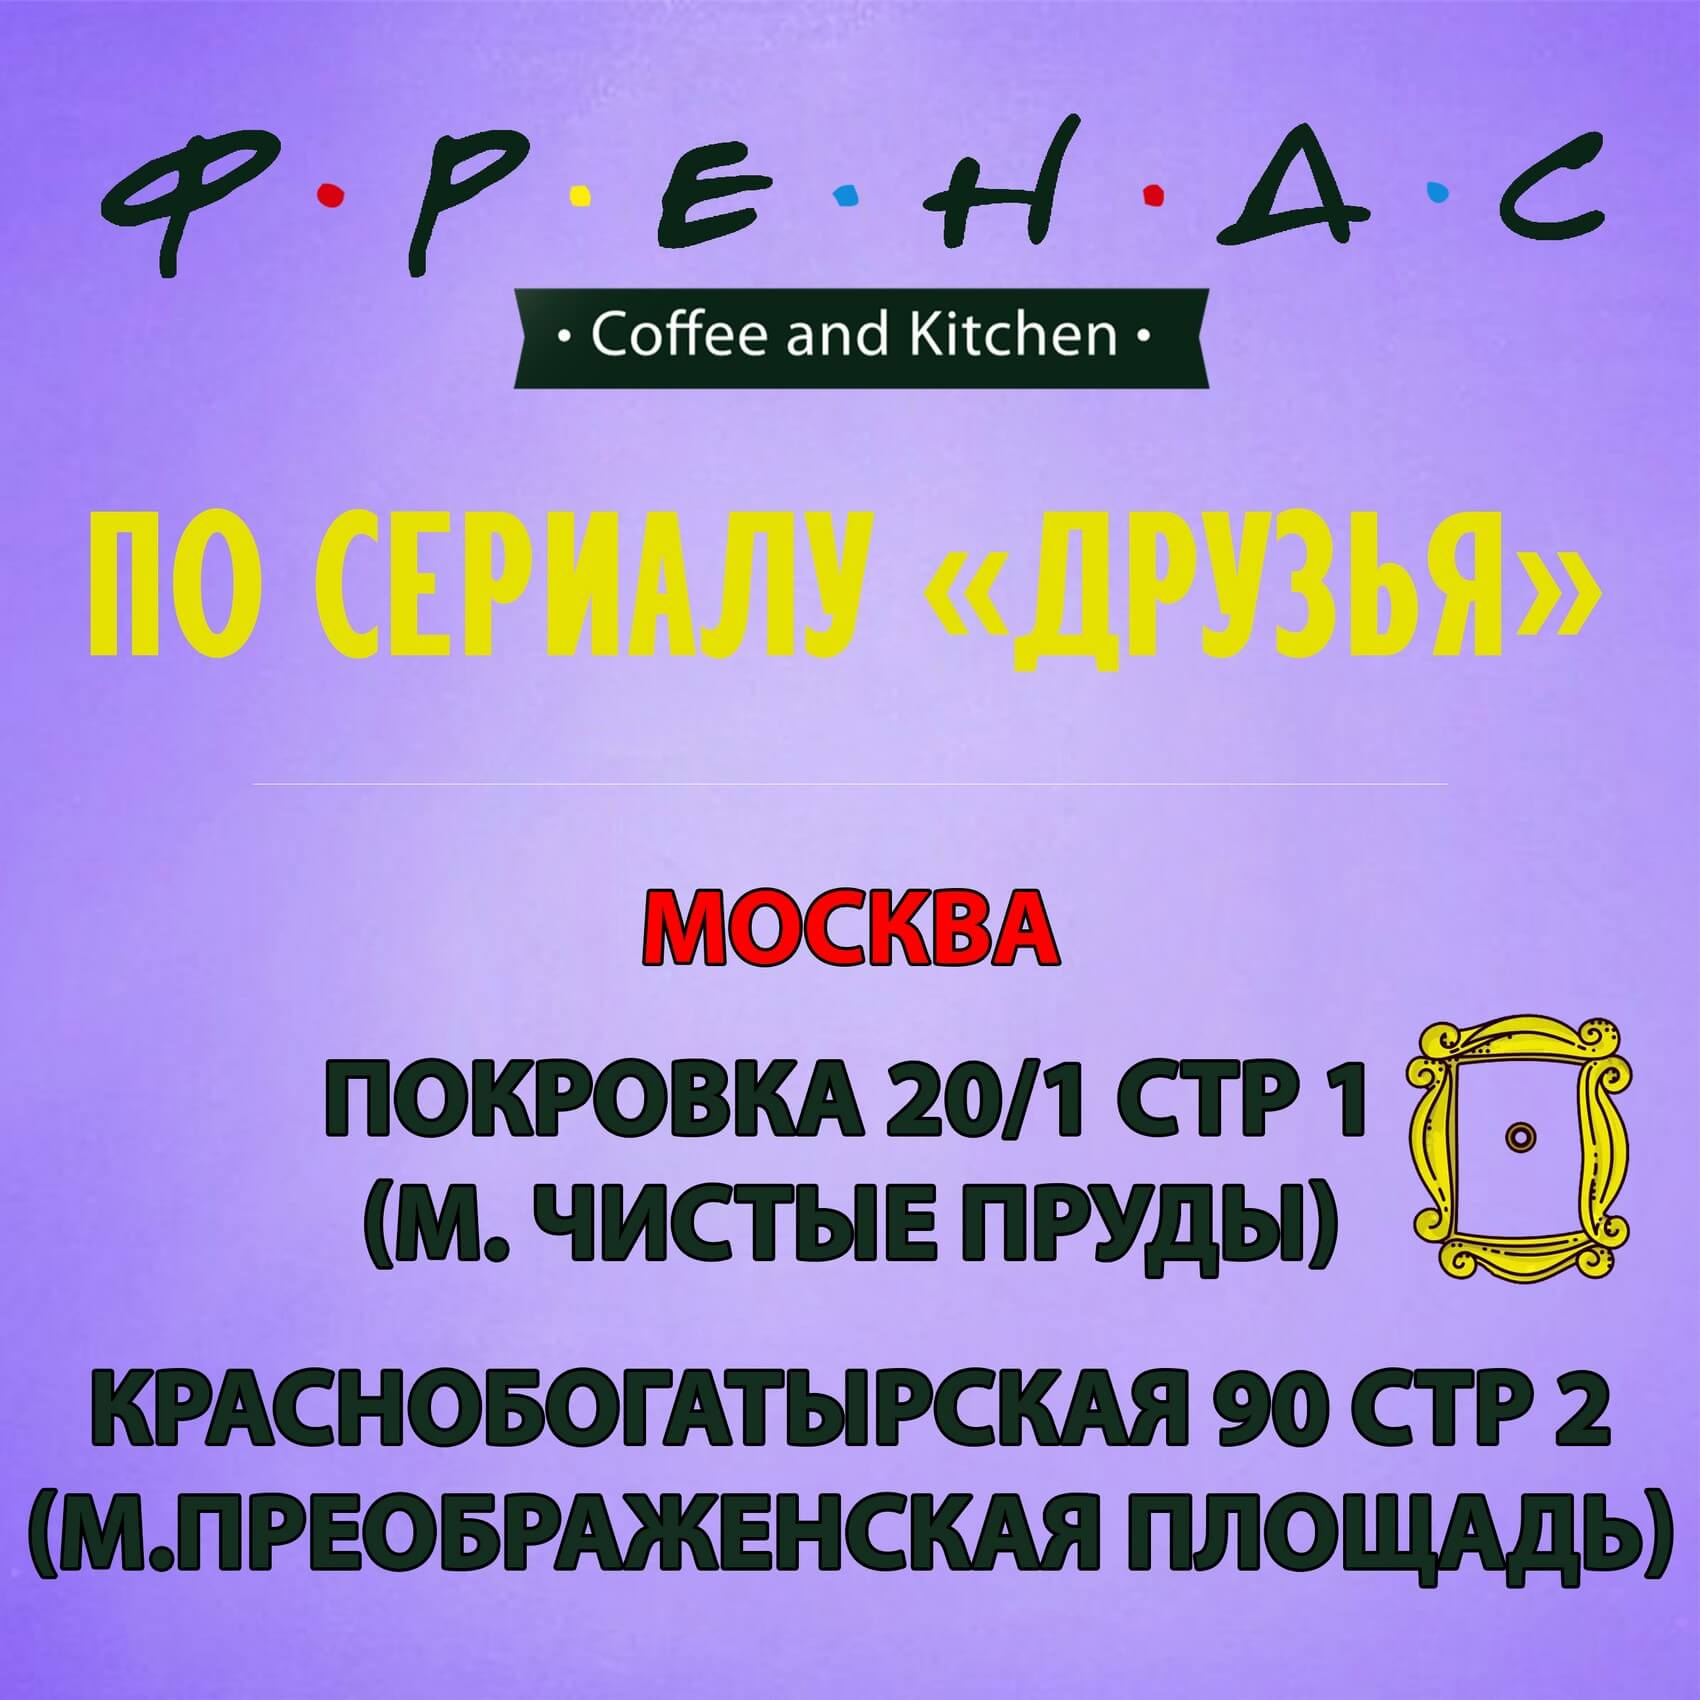 Кафе по сериалу Друзья в Москве